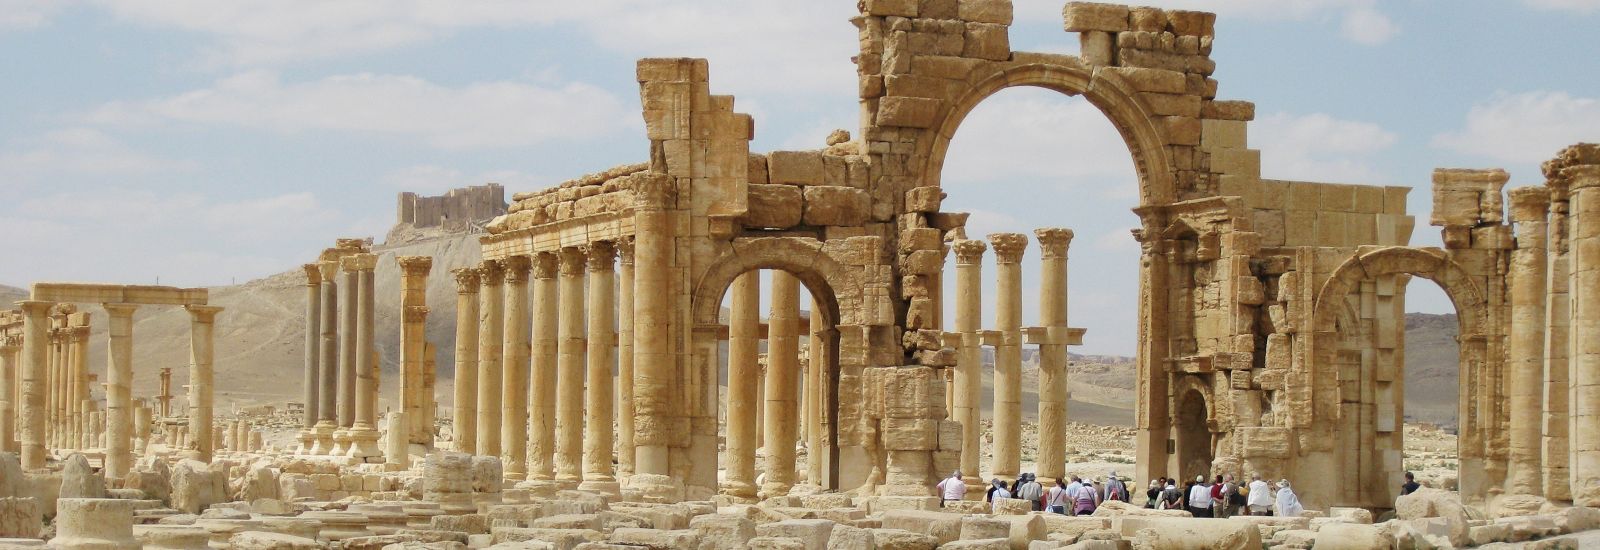 Palmyra’s Monumental Arch